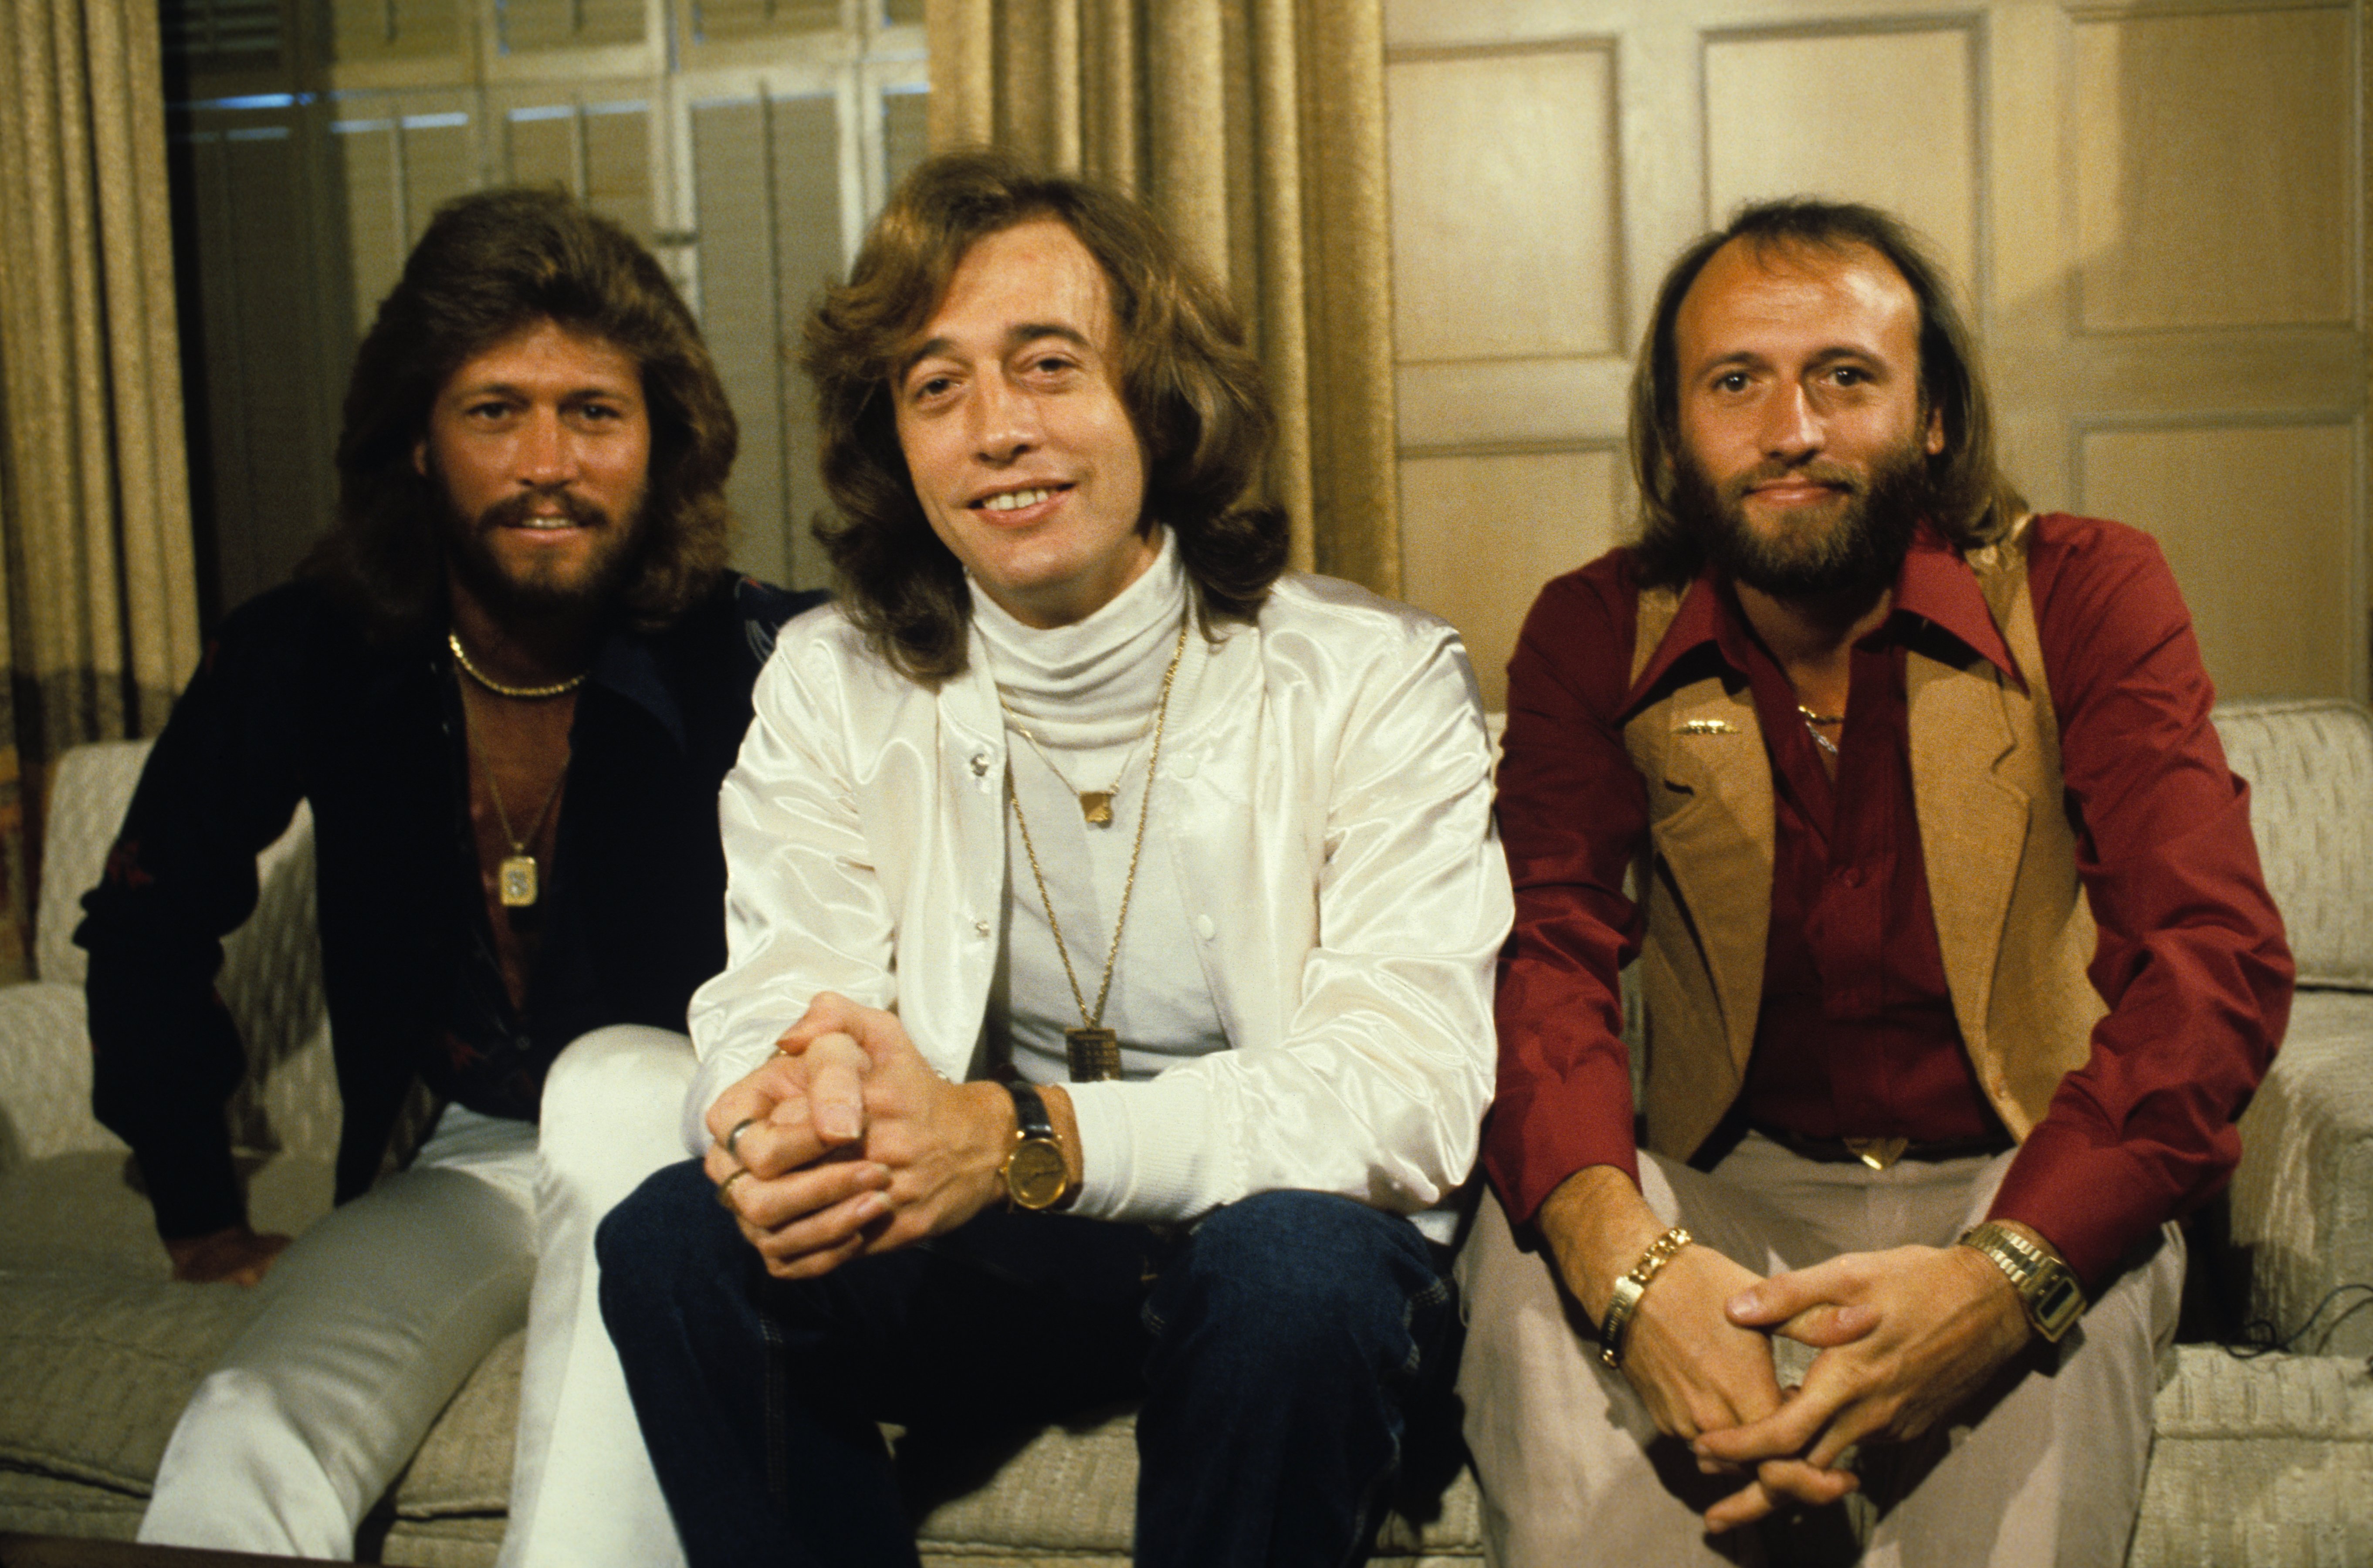 Un portrait des Bee Gees pris dans les années 1960. | Source : Getty Images 